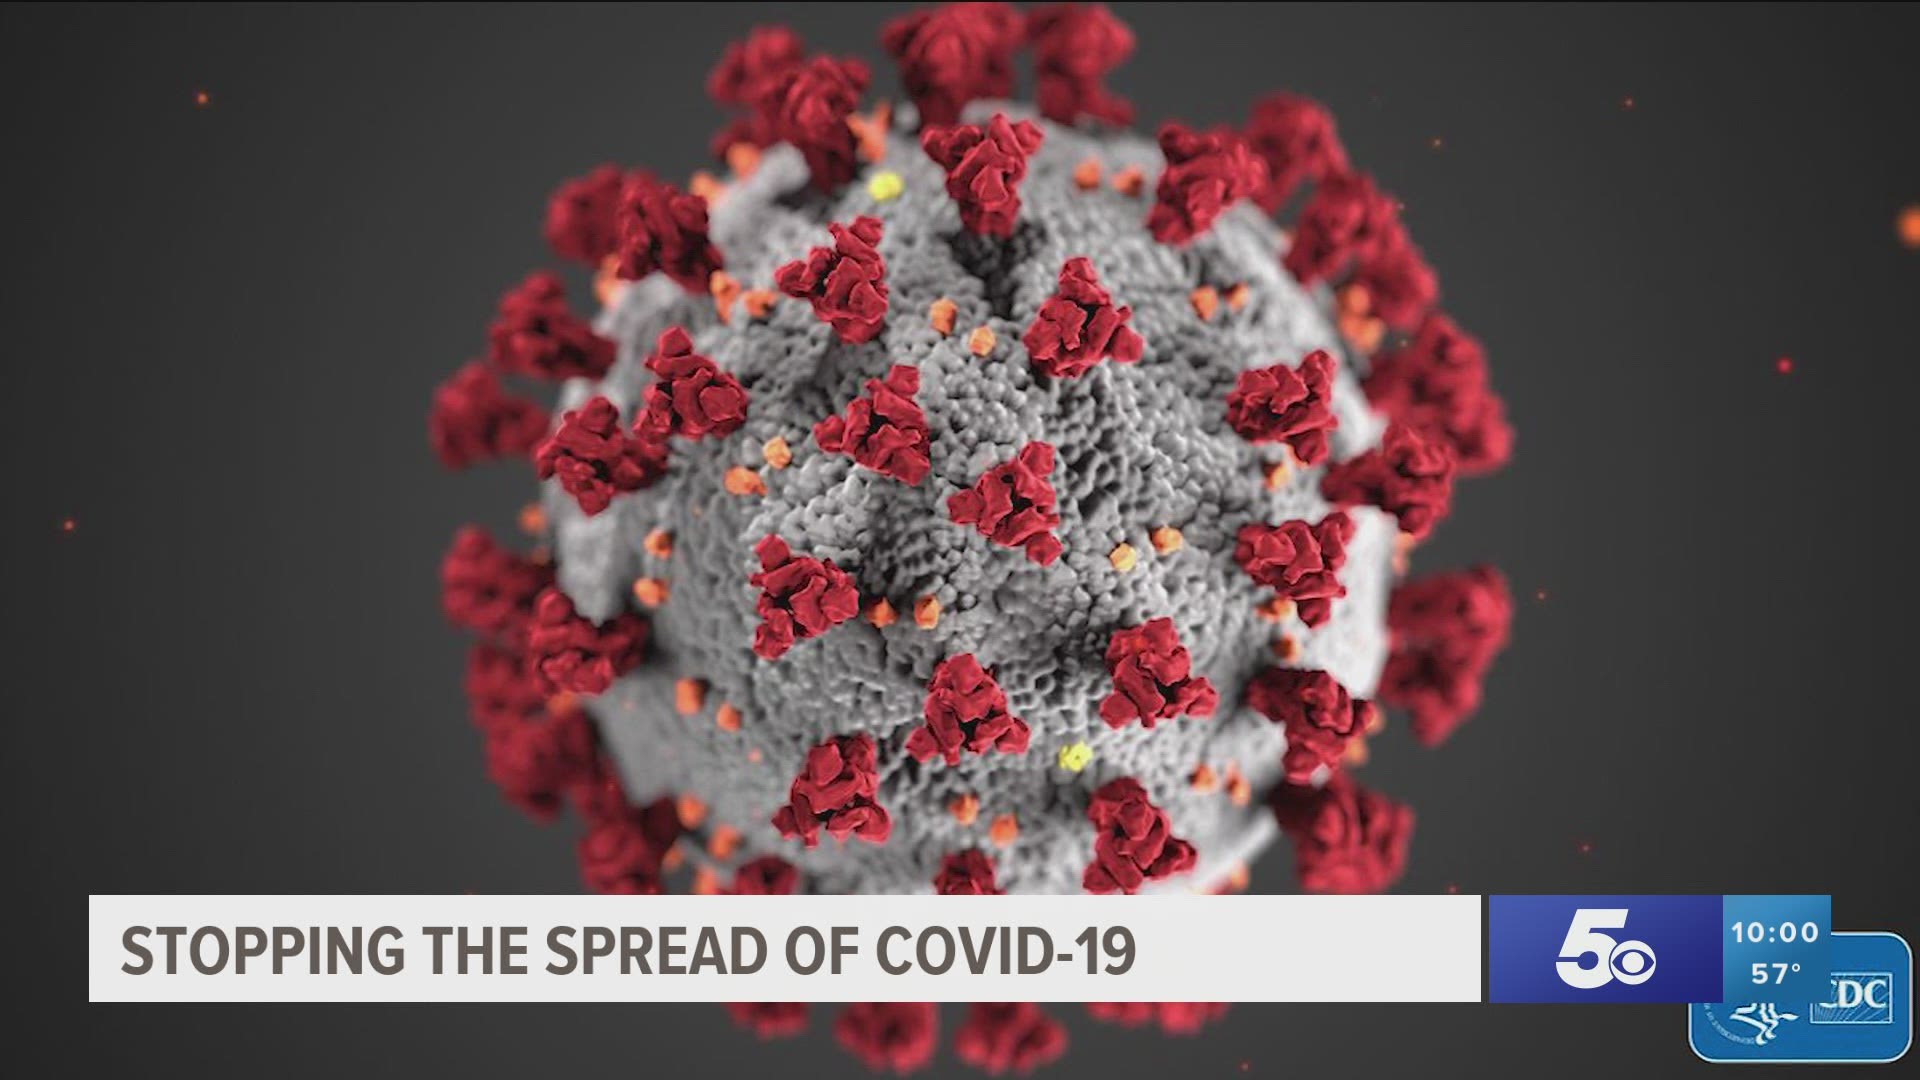 Coronavirus updates